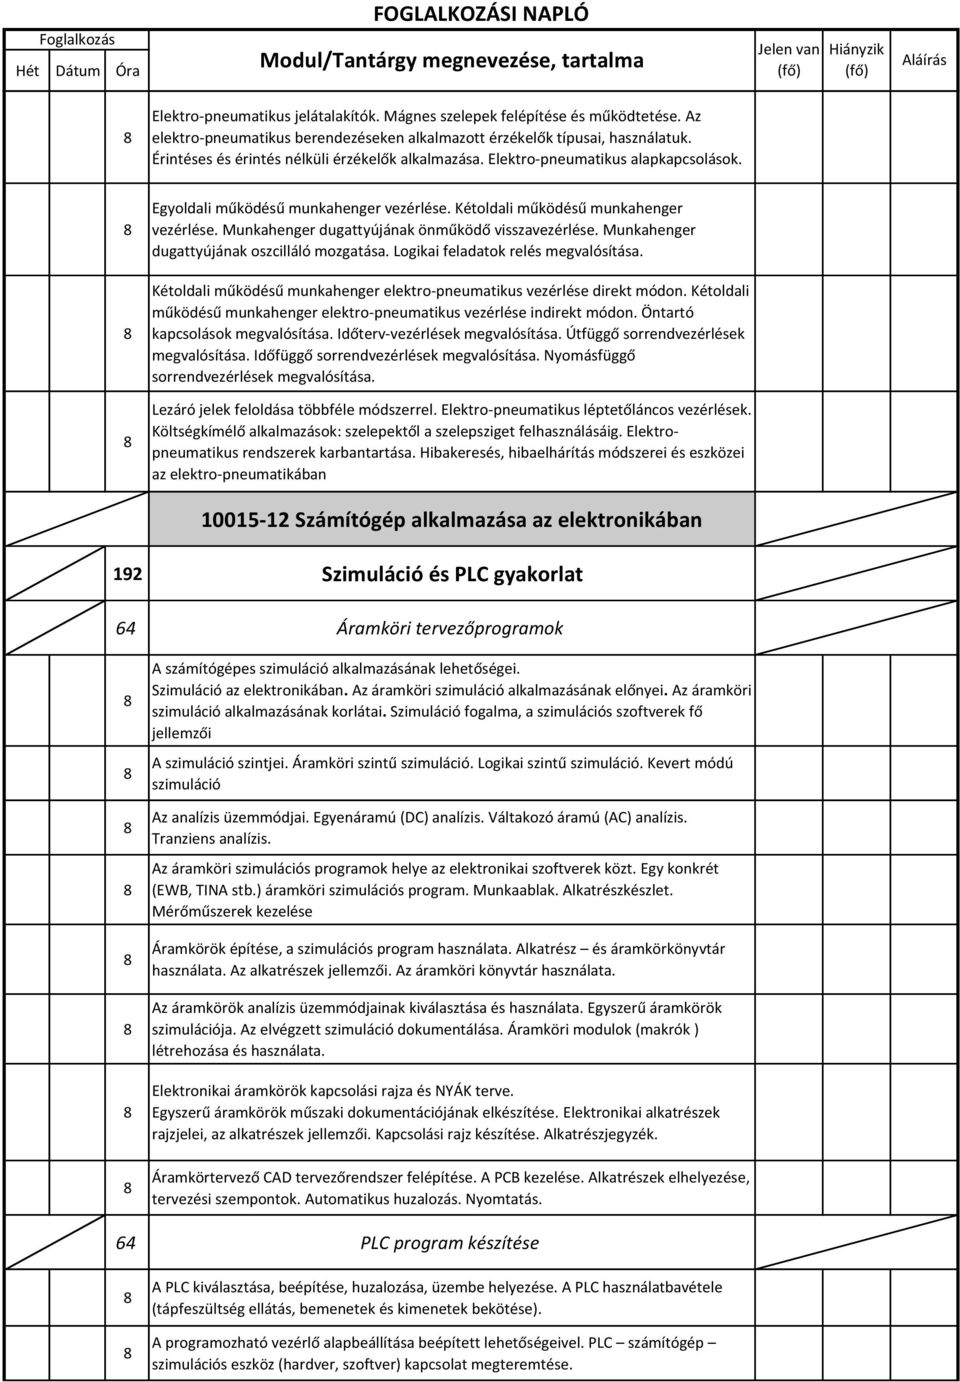 Foglalkozási napló a 20 /20. tanévre - PDF Ingyenes letöltés